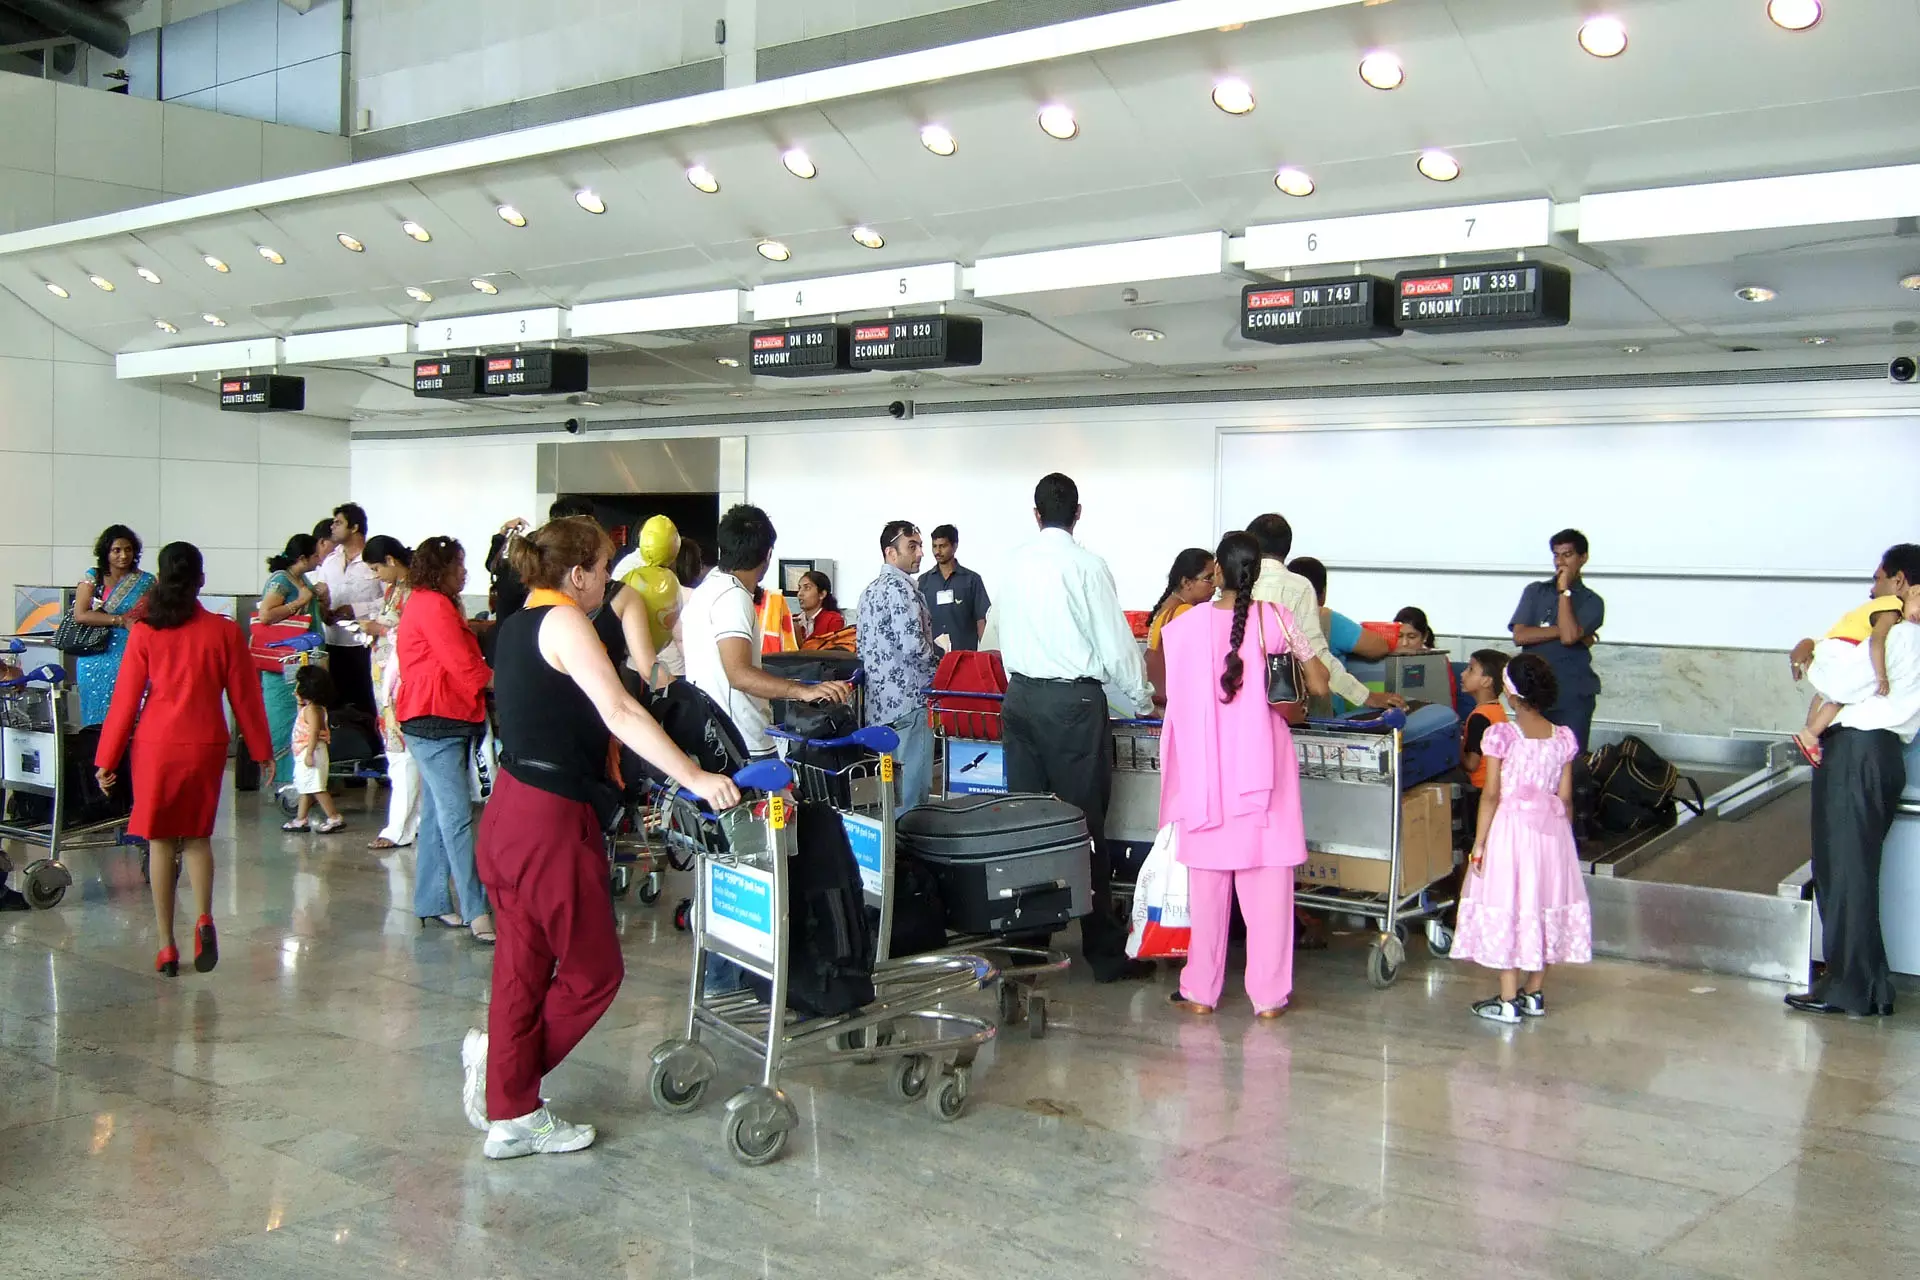 गुप्त तरीके से सोना ले जा रही दो महिलाएं को पुलिस ने मुंबई एयरपोर्ट पर पकड़ा